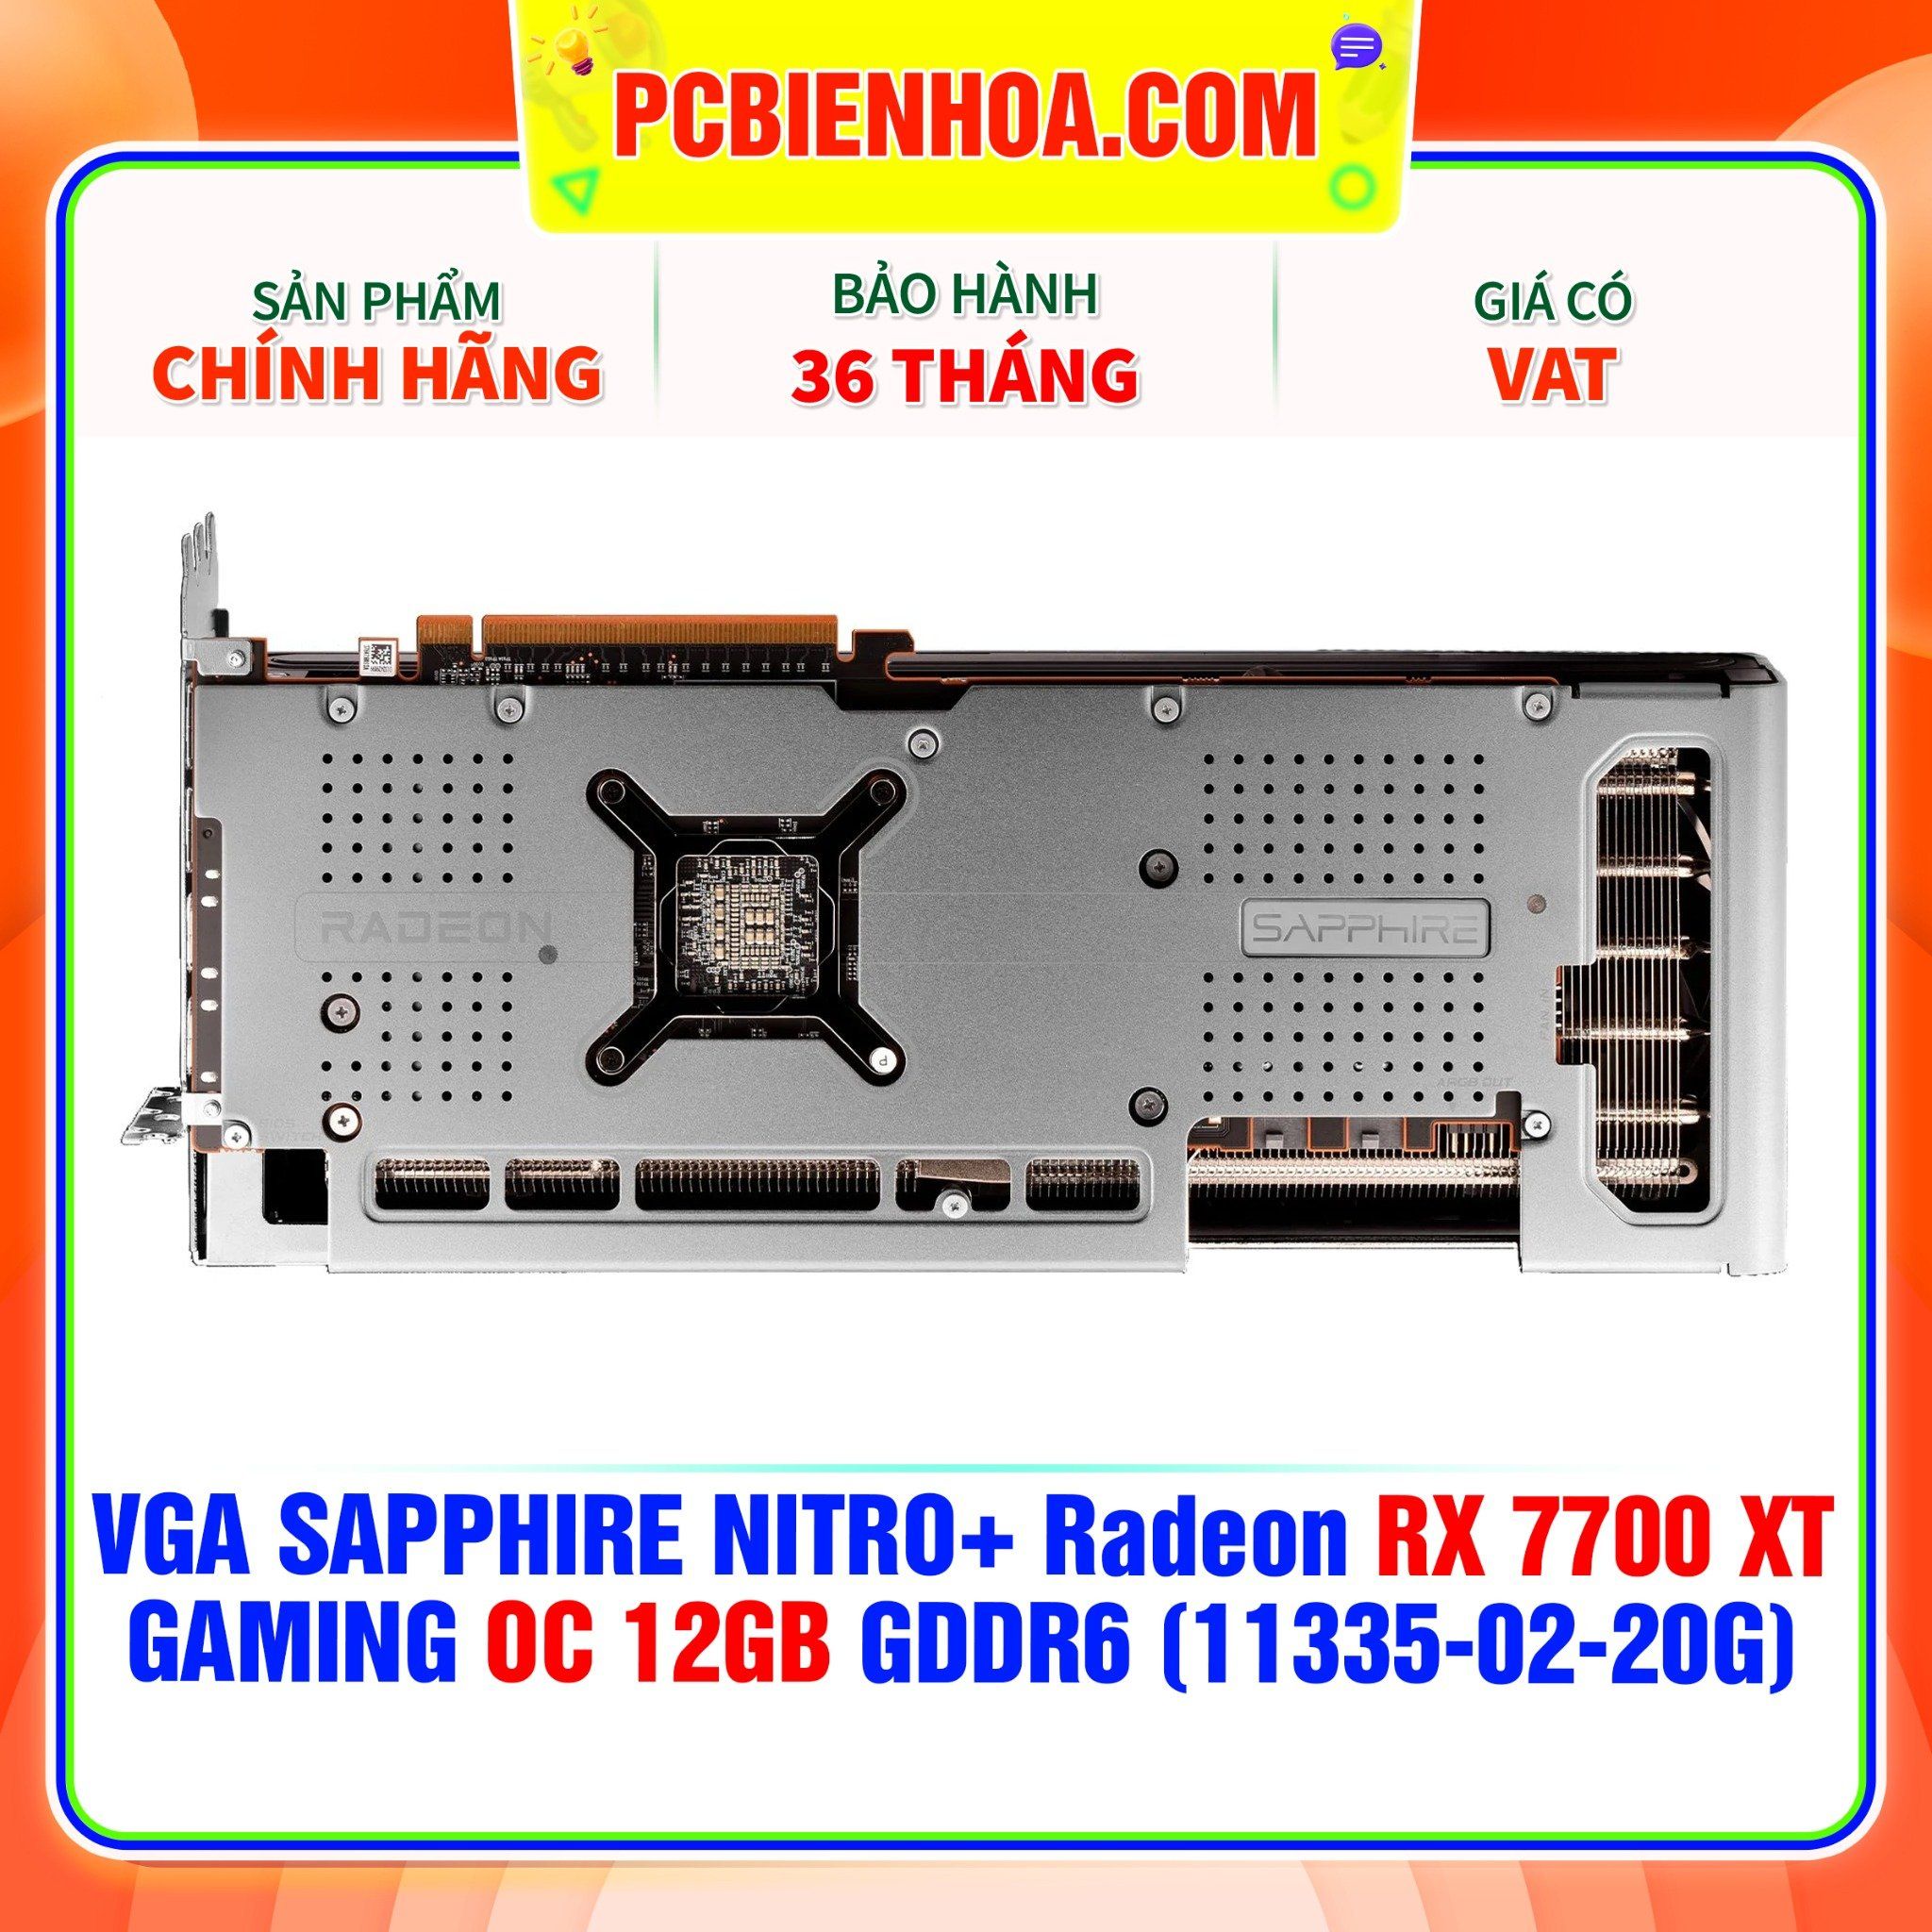  VGA SAPPHIRE NITRO+ Radeon RX 7700 XT GAMING OC 12GB GDDR6 (11335-02-20G) 